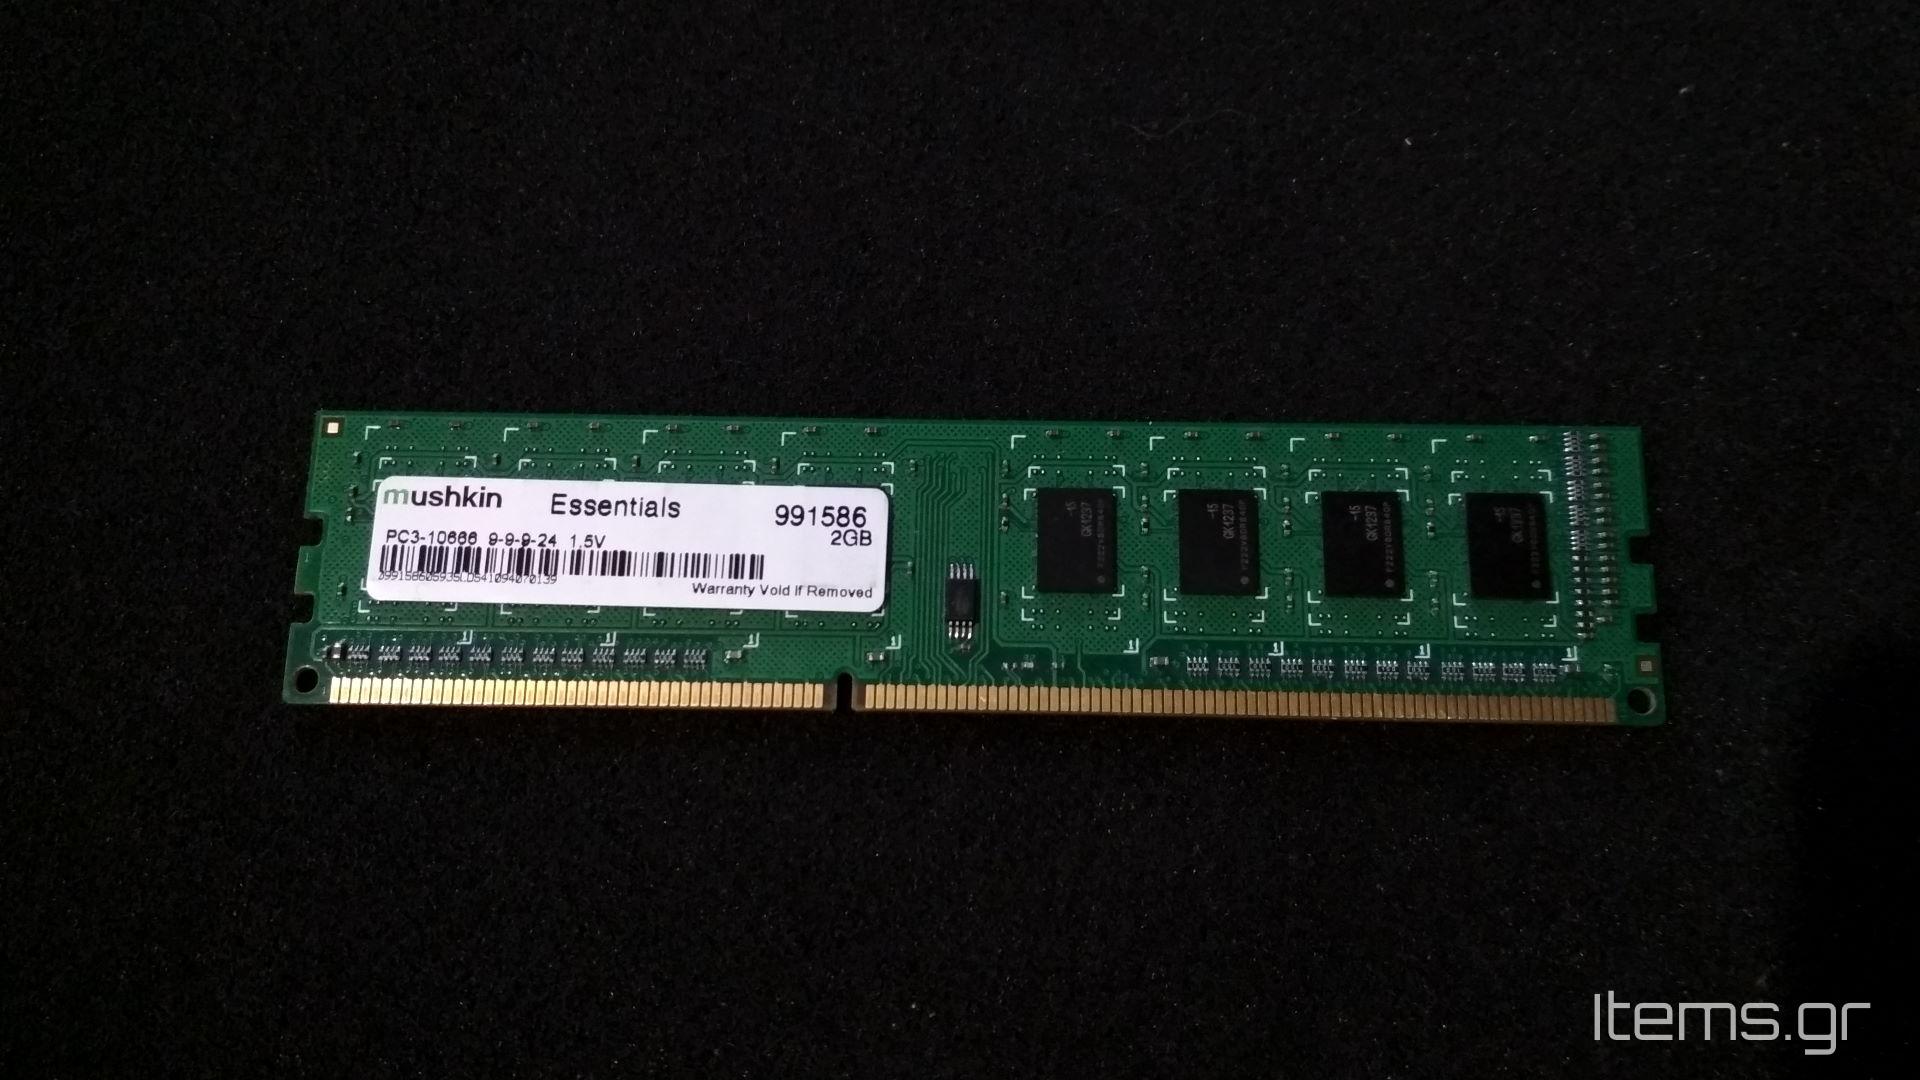 Mushkin-Essentials-2GB-DDR3-1333MHz-DIMM-CL9-01